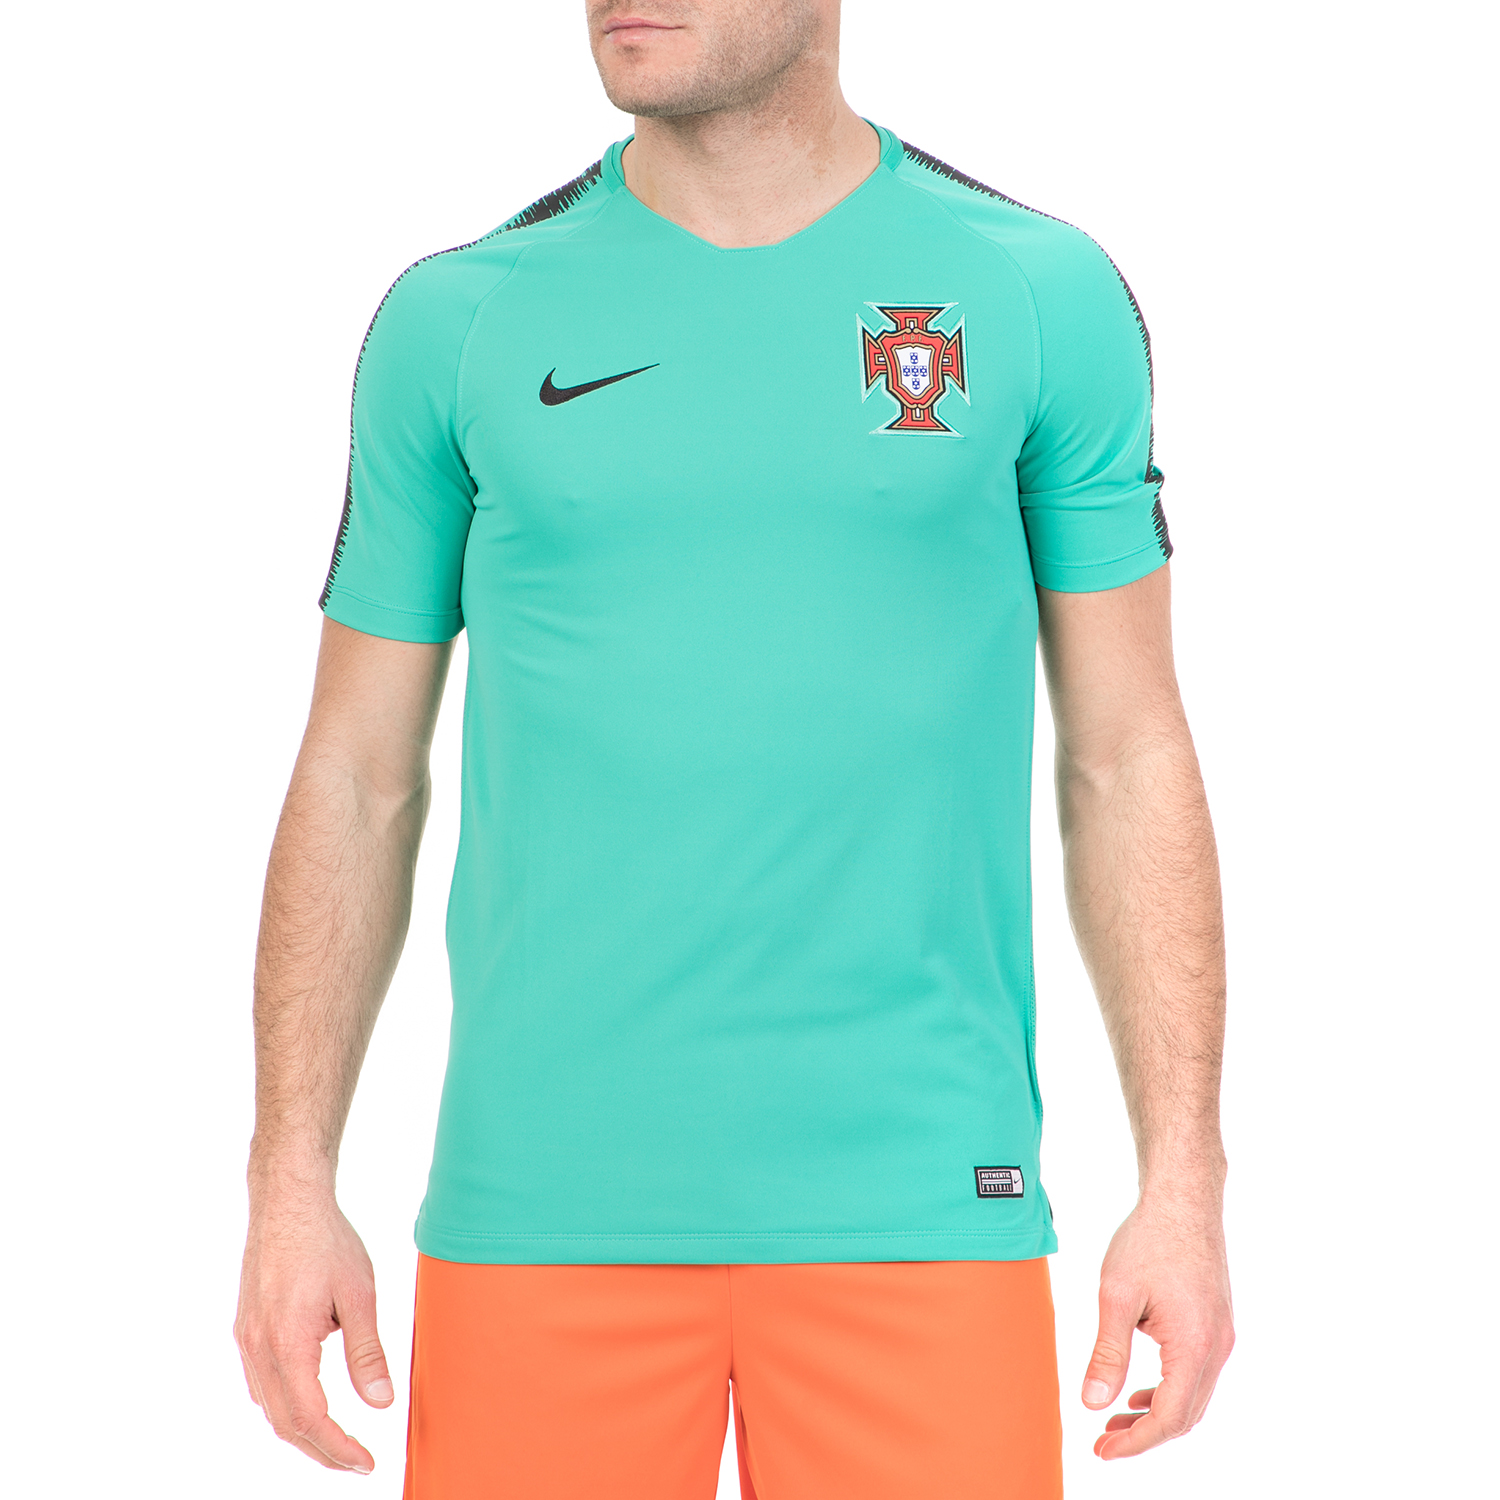 Ανδρικά/Ρούχα/Αθλητικά/T-shirt NIKE - Ανδρική ποδοσφαιρική μπλούζα NIKE BRT S QD TOP πράσινη